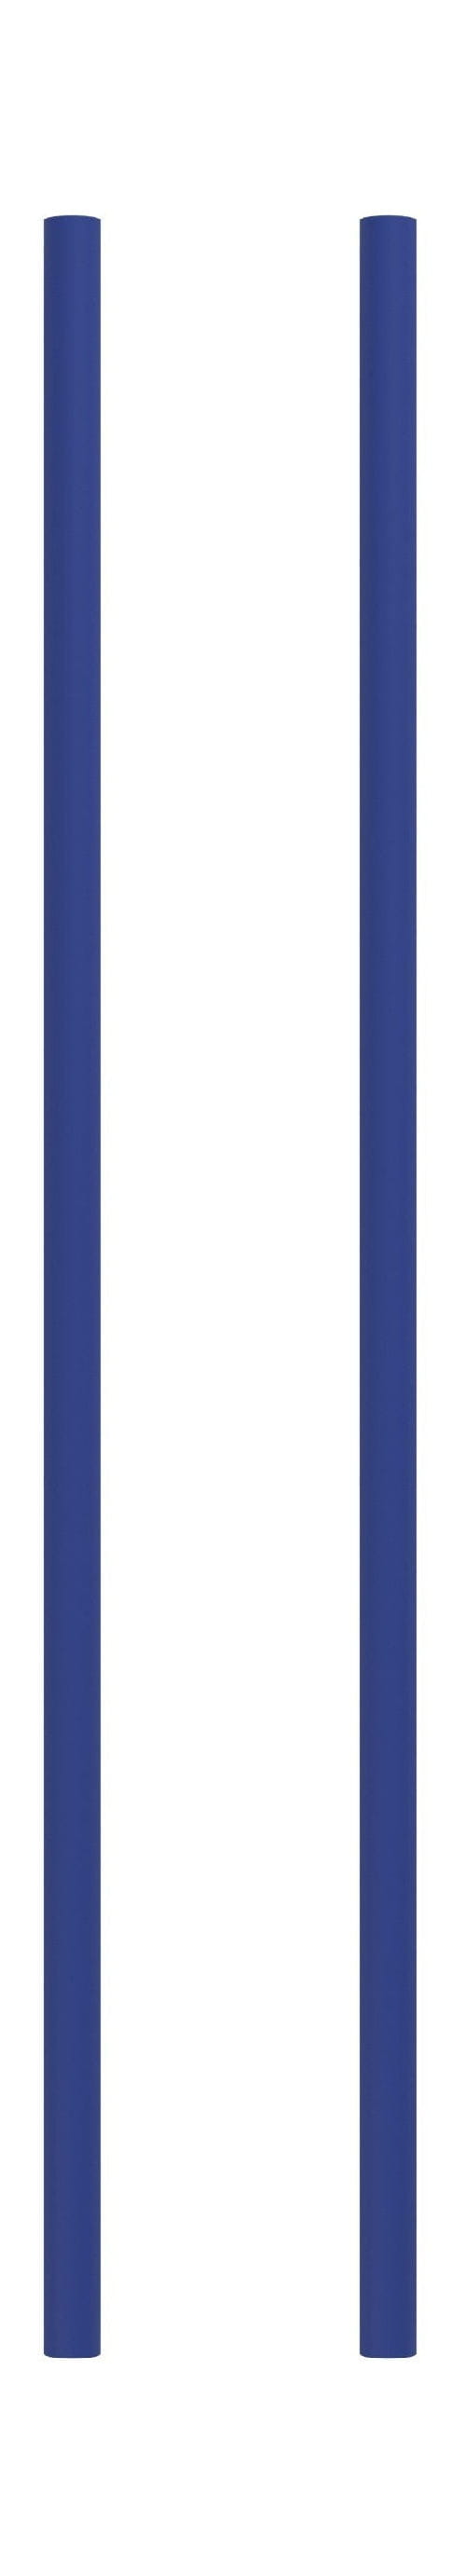 Systém regálů Moebe/Regály zdi noha 65 cm, tmavě modrá